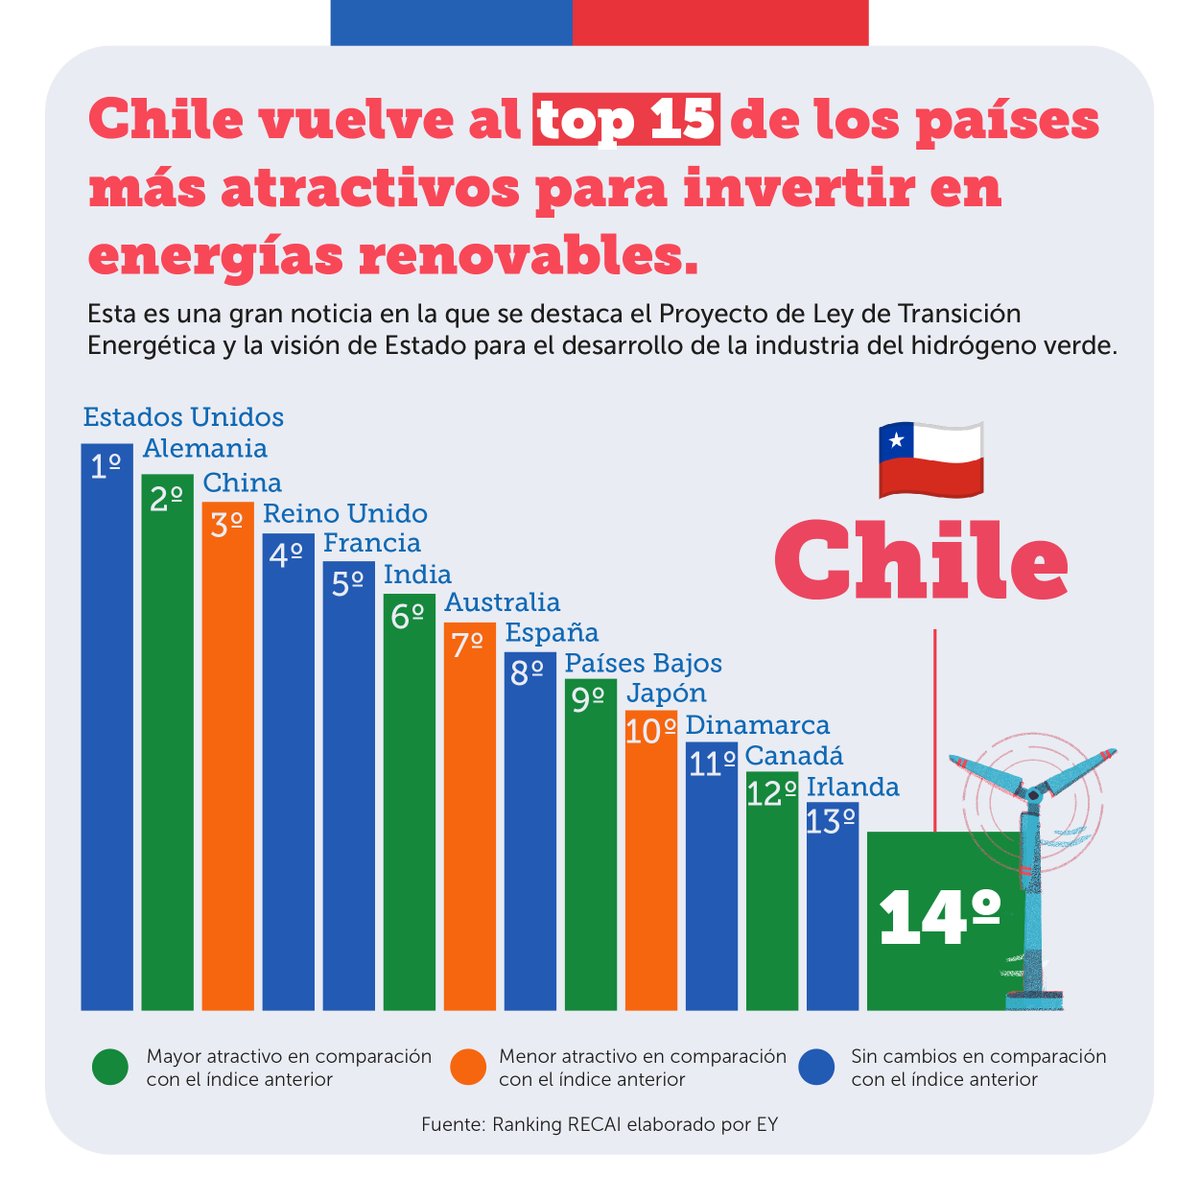 ¡Gran noticia!⚡

Chile está en el top 15 a nivel mundial y en el Nº 1 en Latinoamérica de países más atractivos para invertir en energías renovables.  

El estudio de @EYChile destaca el Proyecto de Ley de #TransiciónEnergética y la visión de Estado para el desarrollo del #H2V.